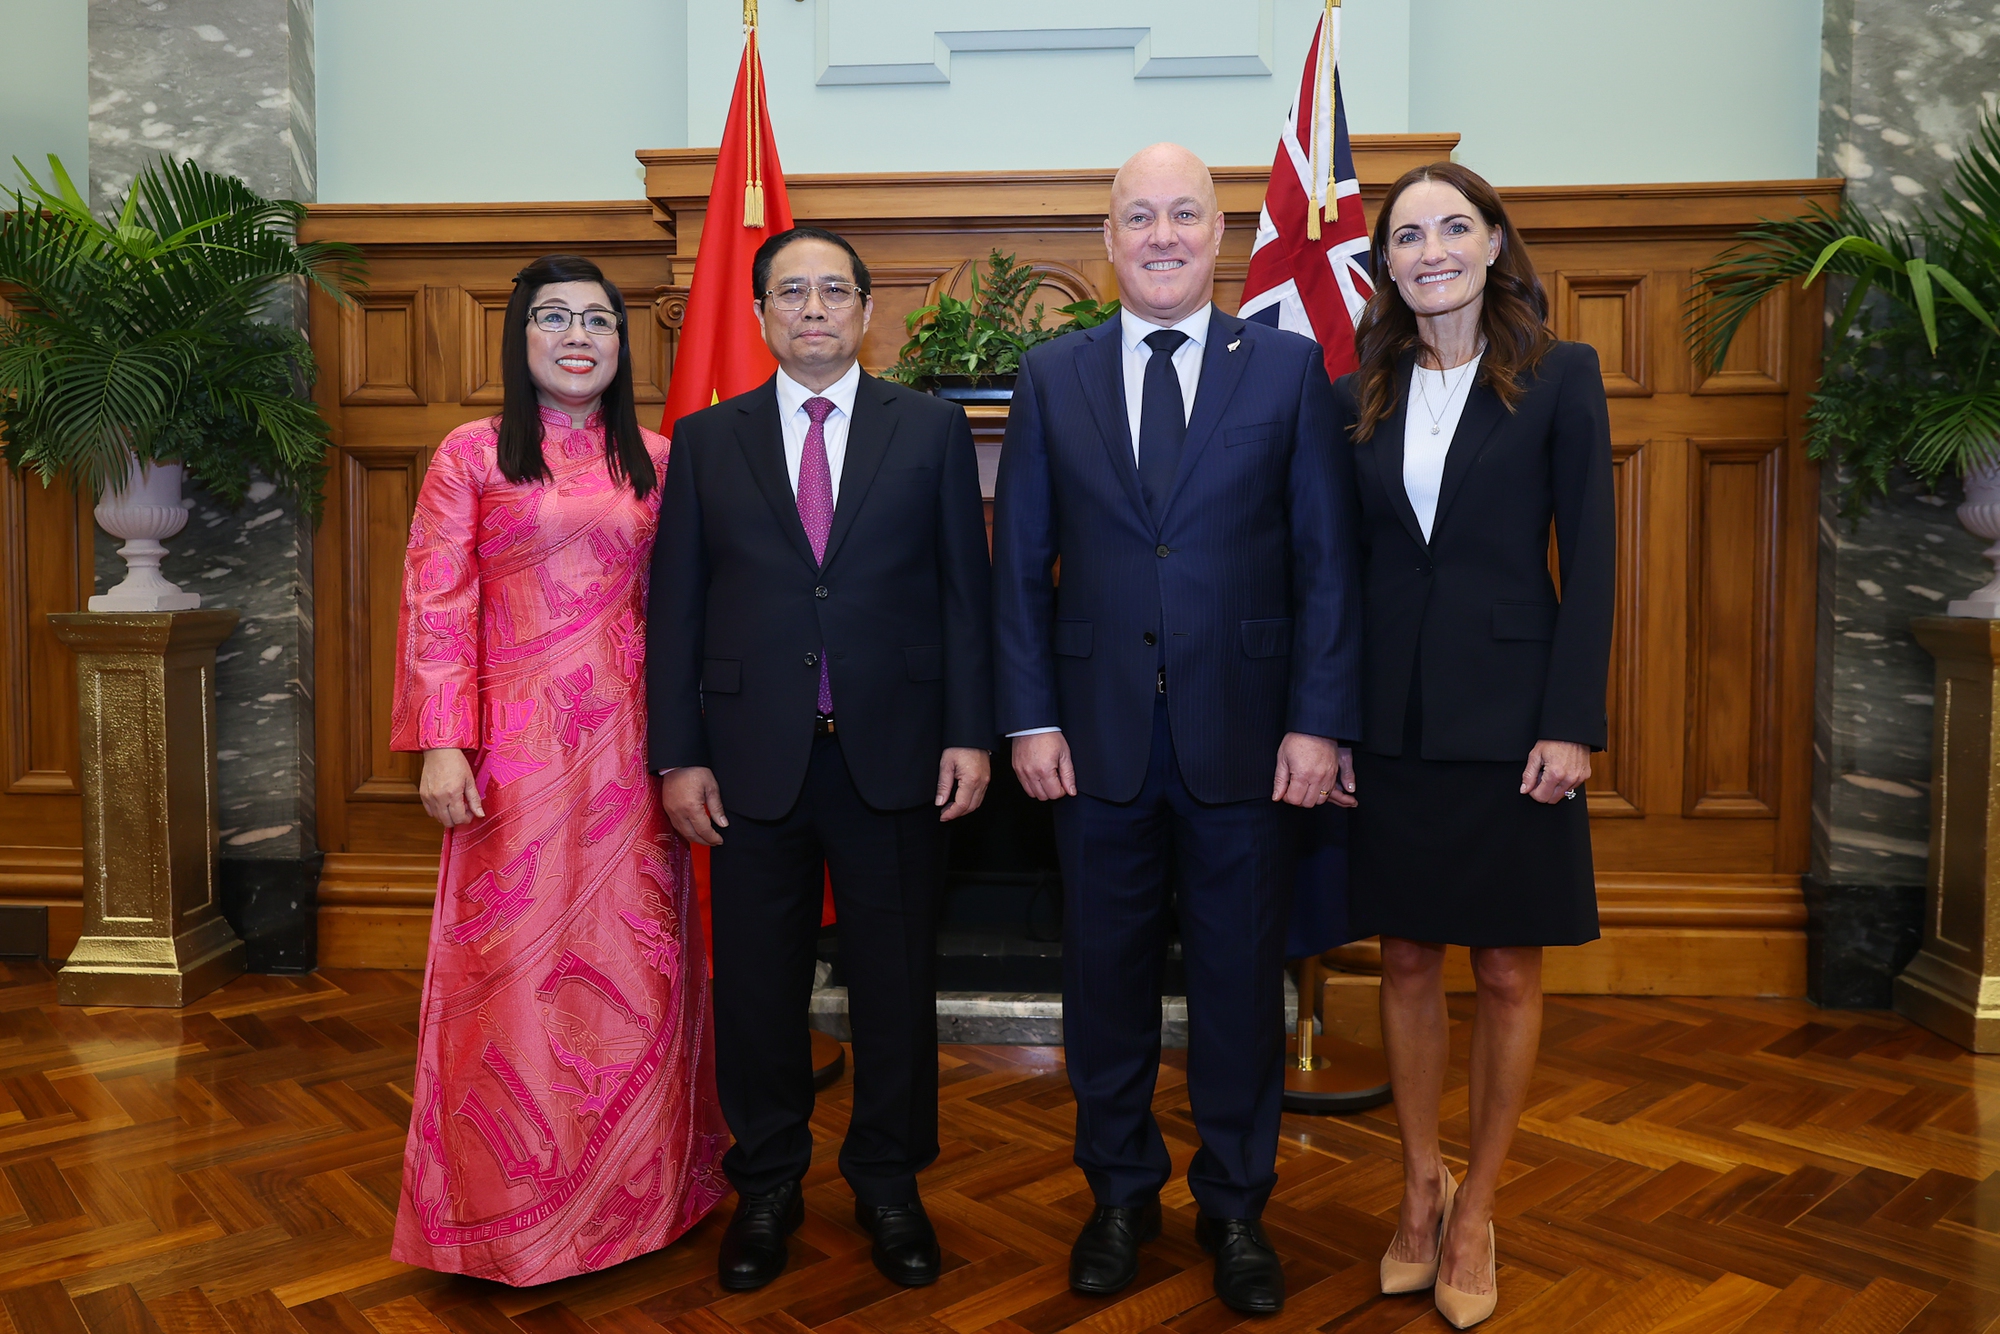 Thủ tướng Christopher Luxon nhiệt liệt chào mừng Thủ tướng Chính phủ Phạm Minh Chính lần đầu tiên thăm chính thức New Zealand, là Khách mời cấp cao nước ngoài đầu tiên của Chính phủ New Zealand kể từ khi Chính phủ mới lên nắm quyền - Ảnh: VGP/Nhật Bắc